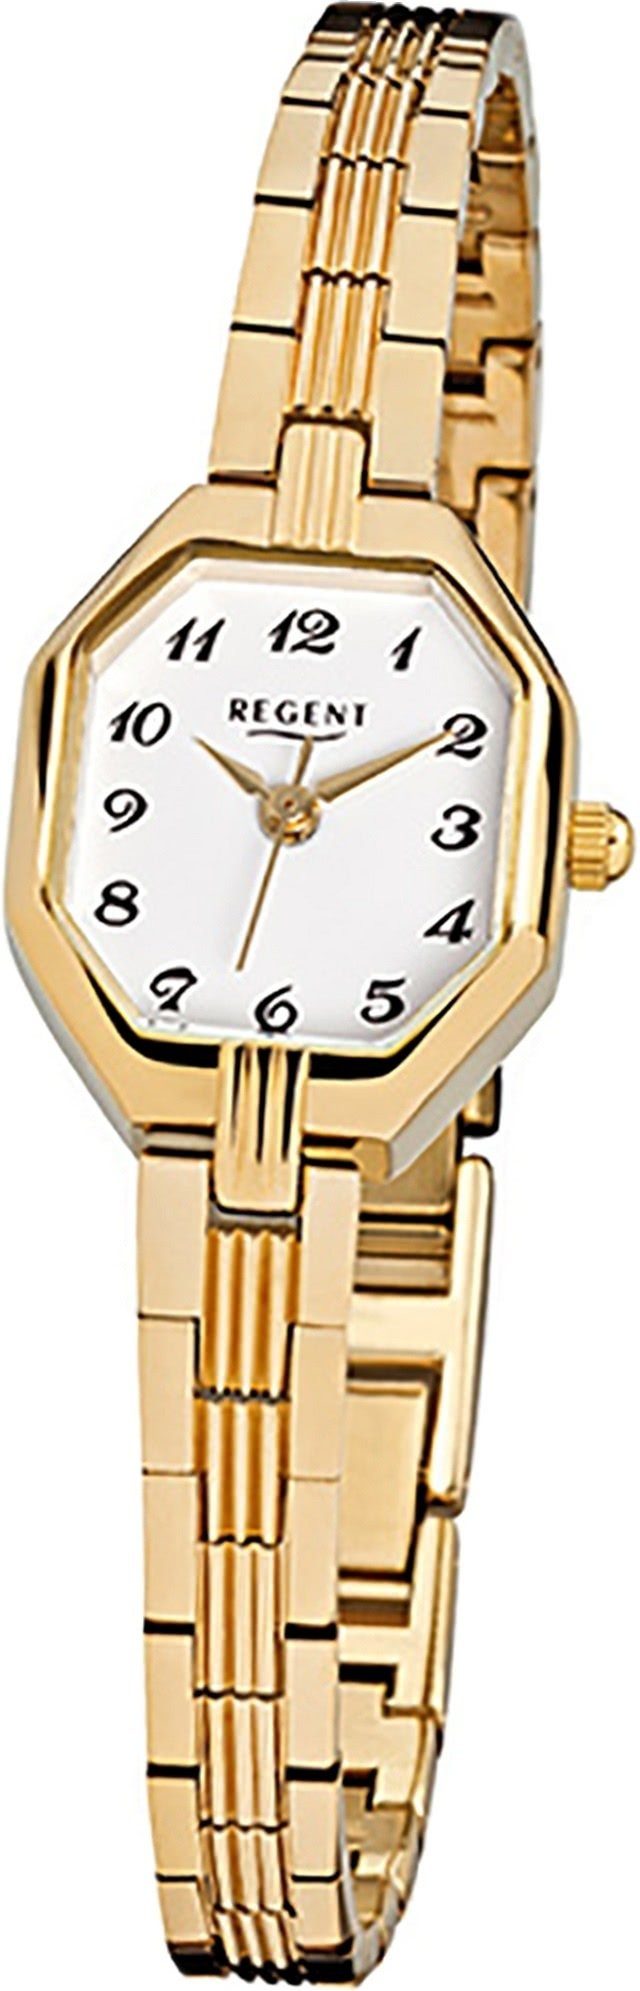 Regent Quarzuhr Regent Stahl Damen Uhr F-305 Quarzuhr, Damenuhr Edelstahl, ionenplattiert eckiges Gehäuse, klein (ca 19x22mm)